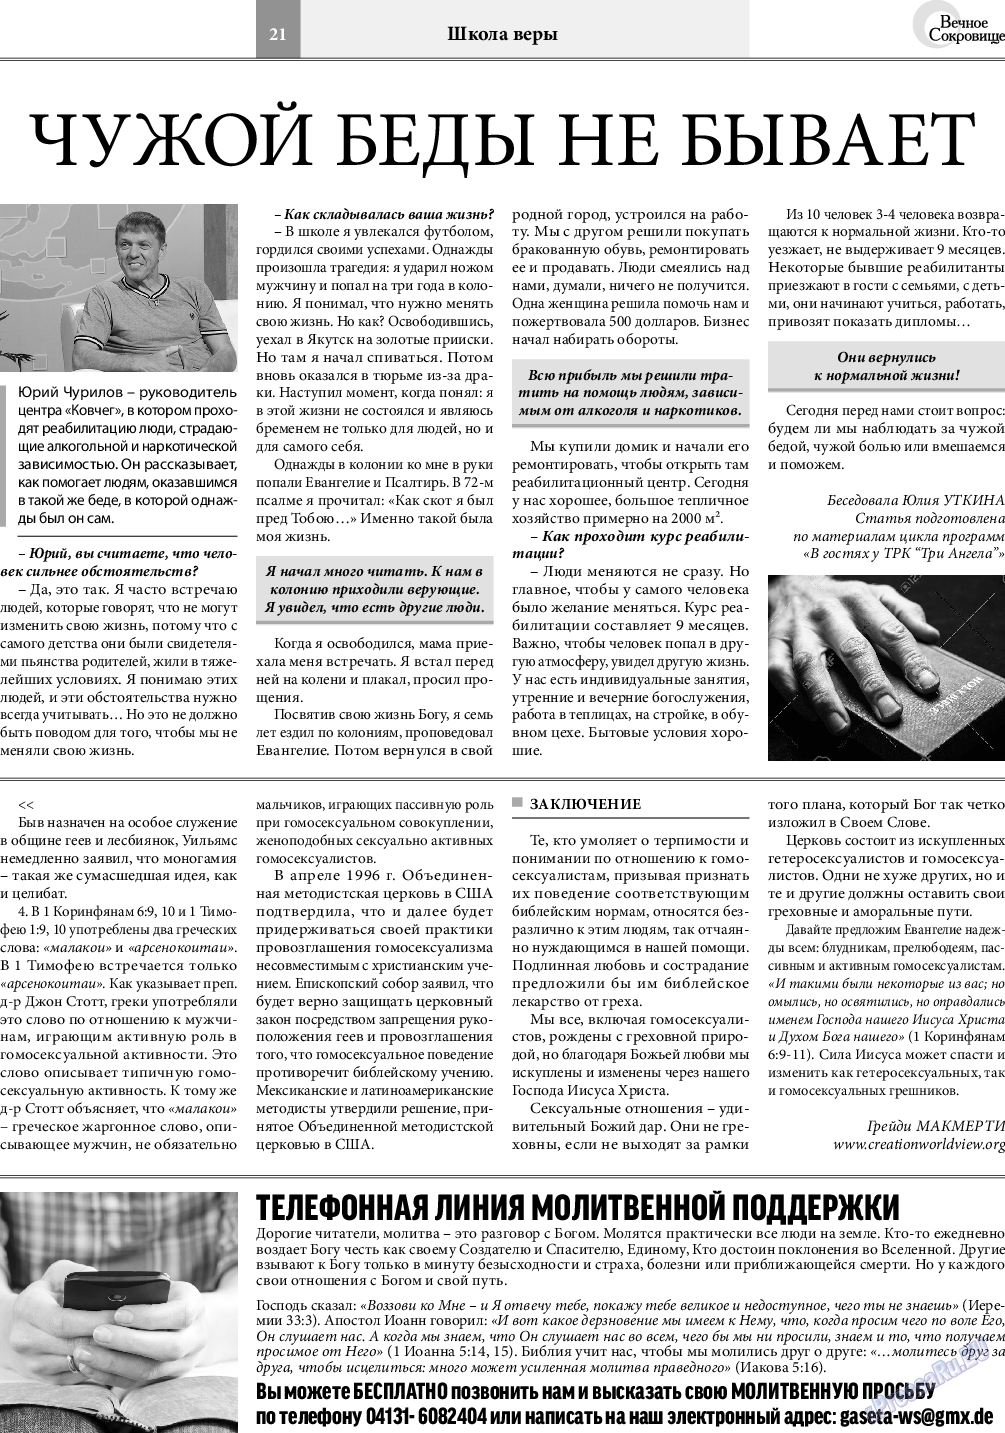 Вечное сокровище, газета. 2020 №6 стр.21